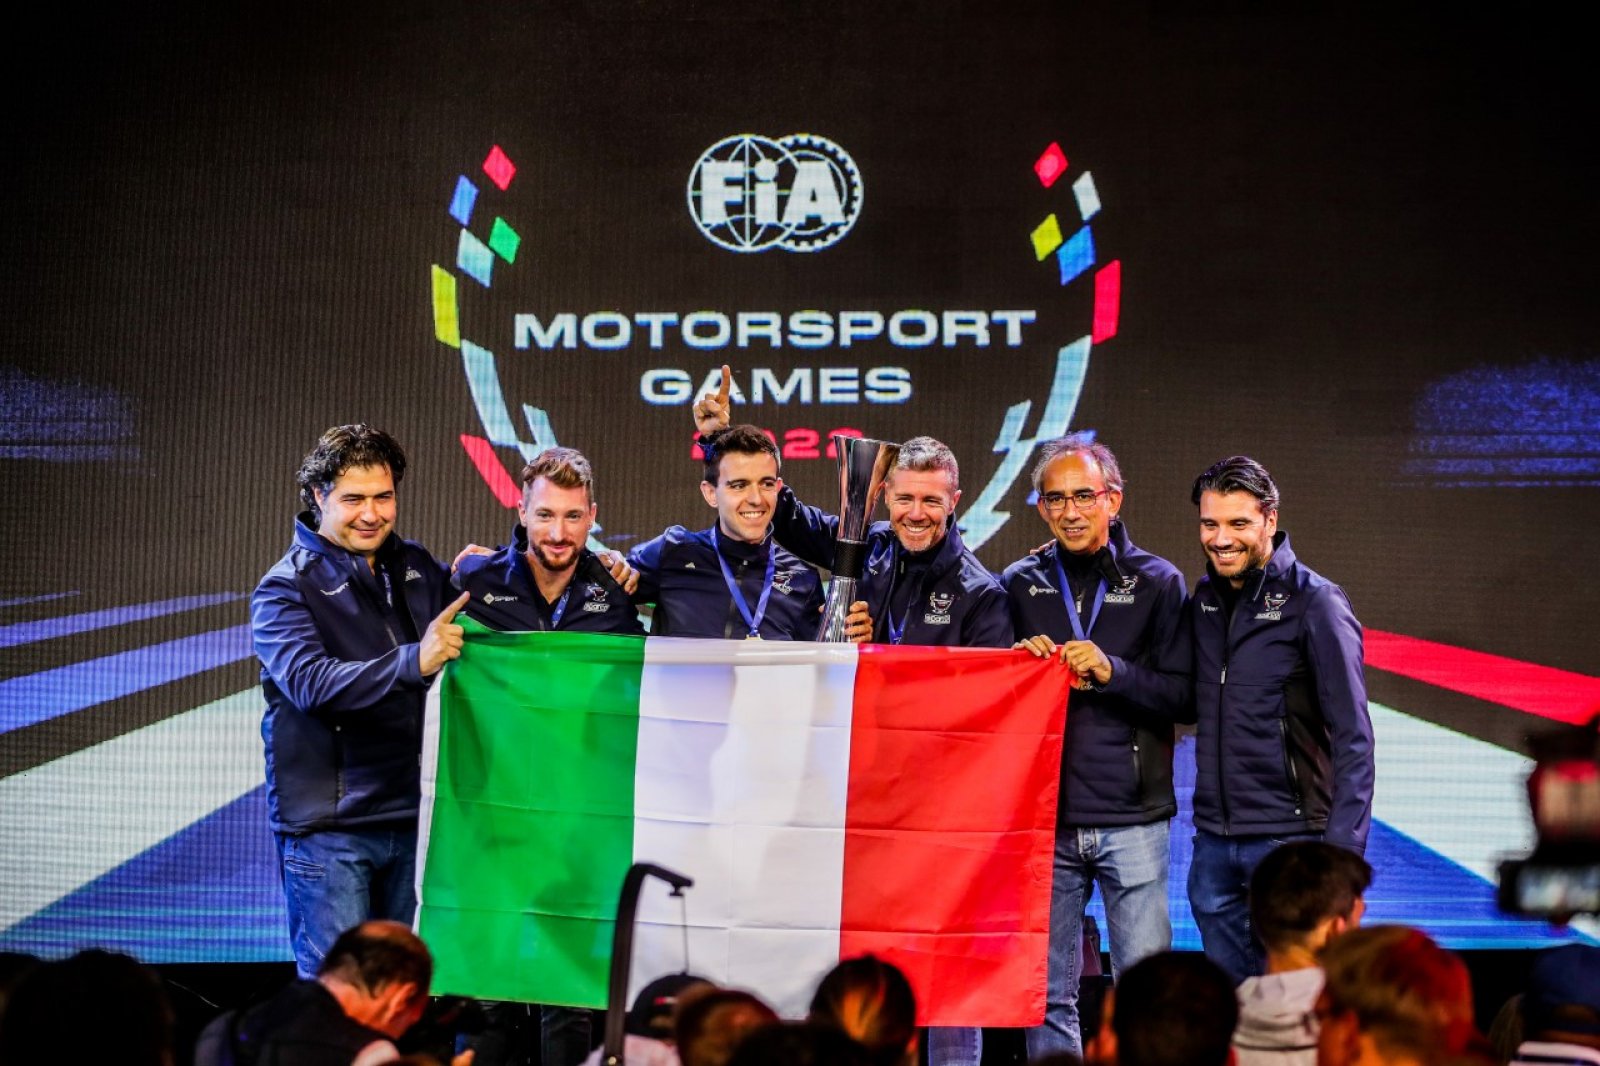 FIA Motorsport Games, Italia vincitrice edizione 2022